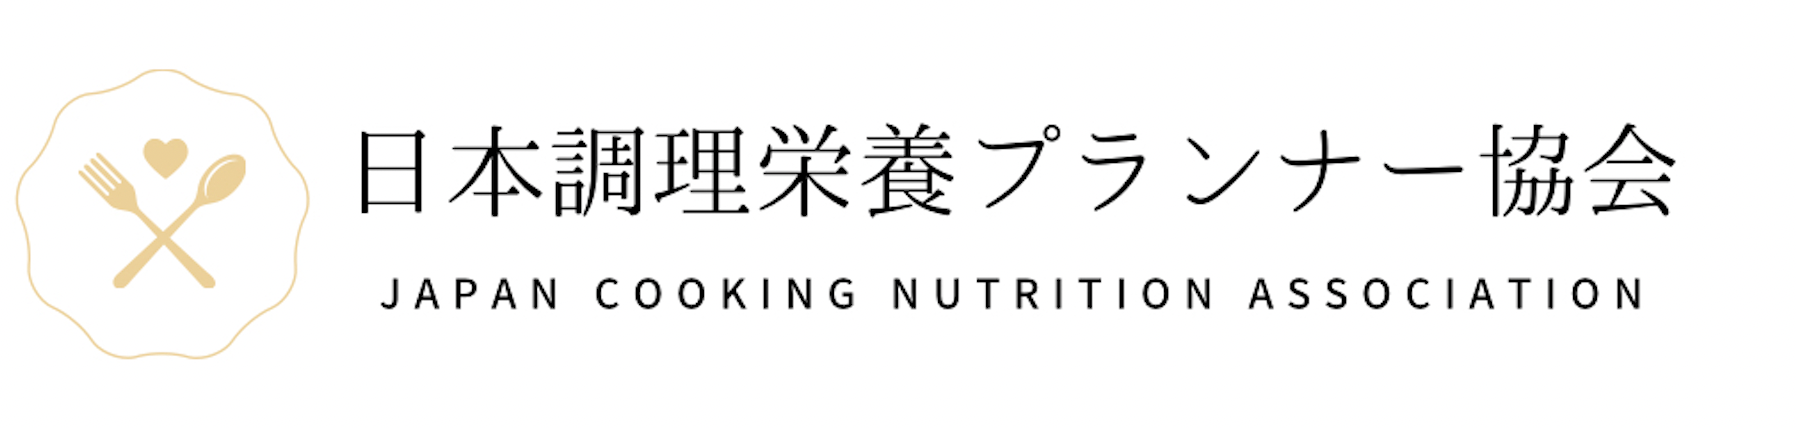 日本調理栄養プランナー協会